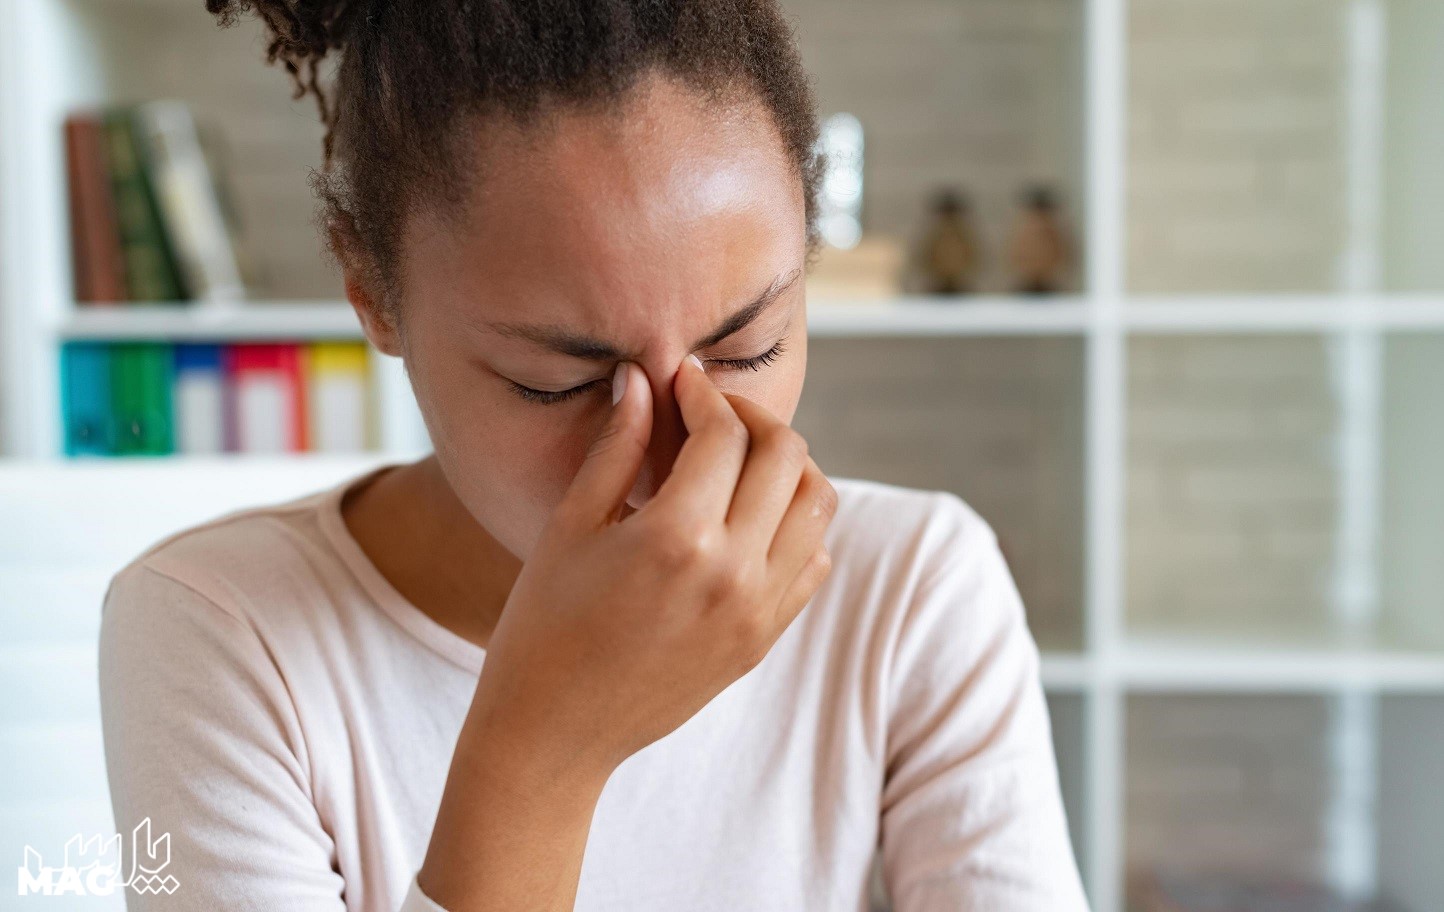 درد کاسه چشم - درمان خانگی سردرد پیشانی و چشم